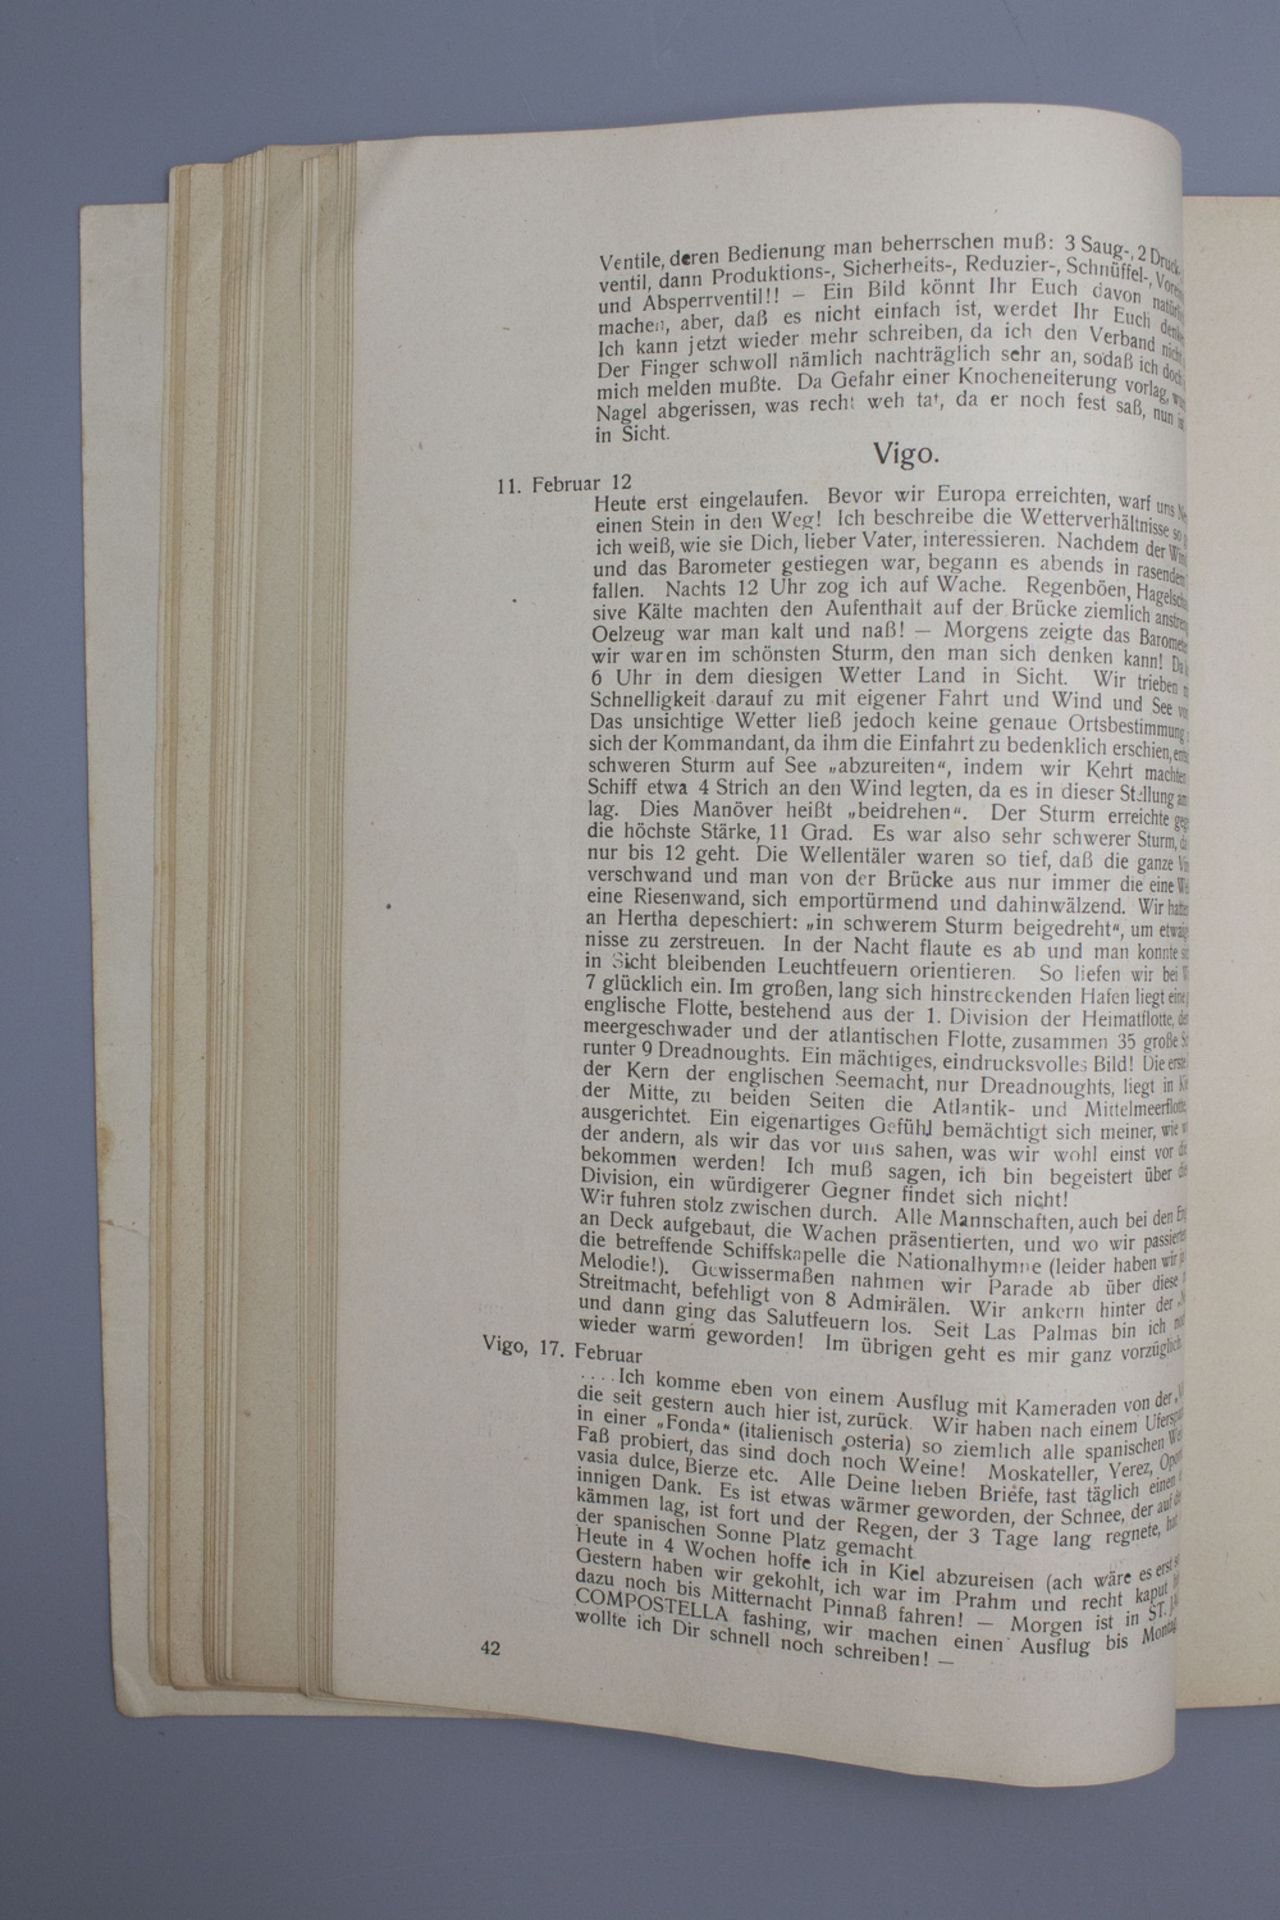 Biographie / A biography des Joachim Diederich Kramsta, 1. Wachoffizier auf U66, 1917/18 - Image 6 of 7